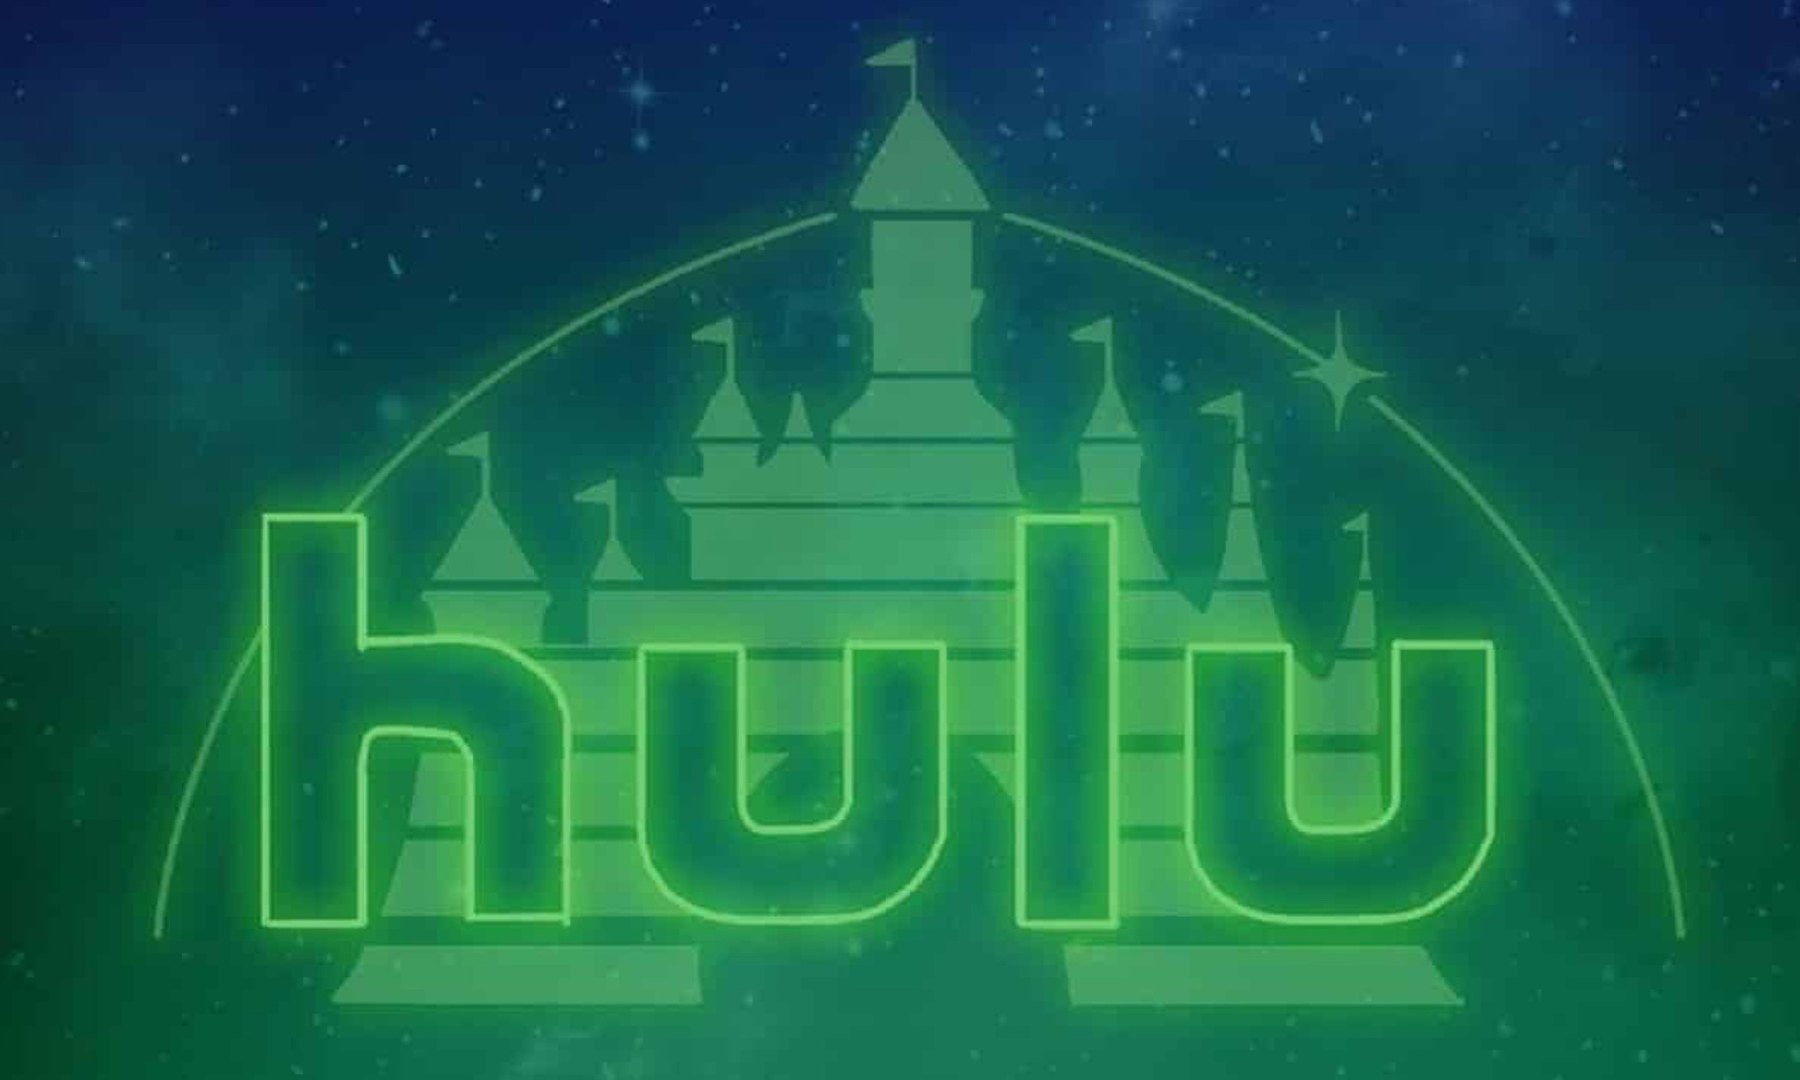 版图再扩张，迪士尼获得视频网站 Hulu 全面运营控制权